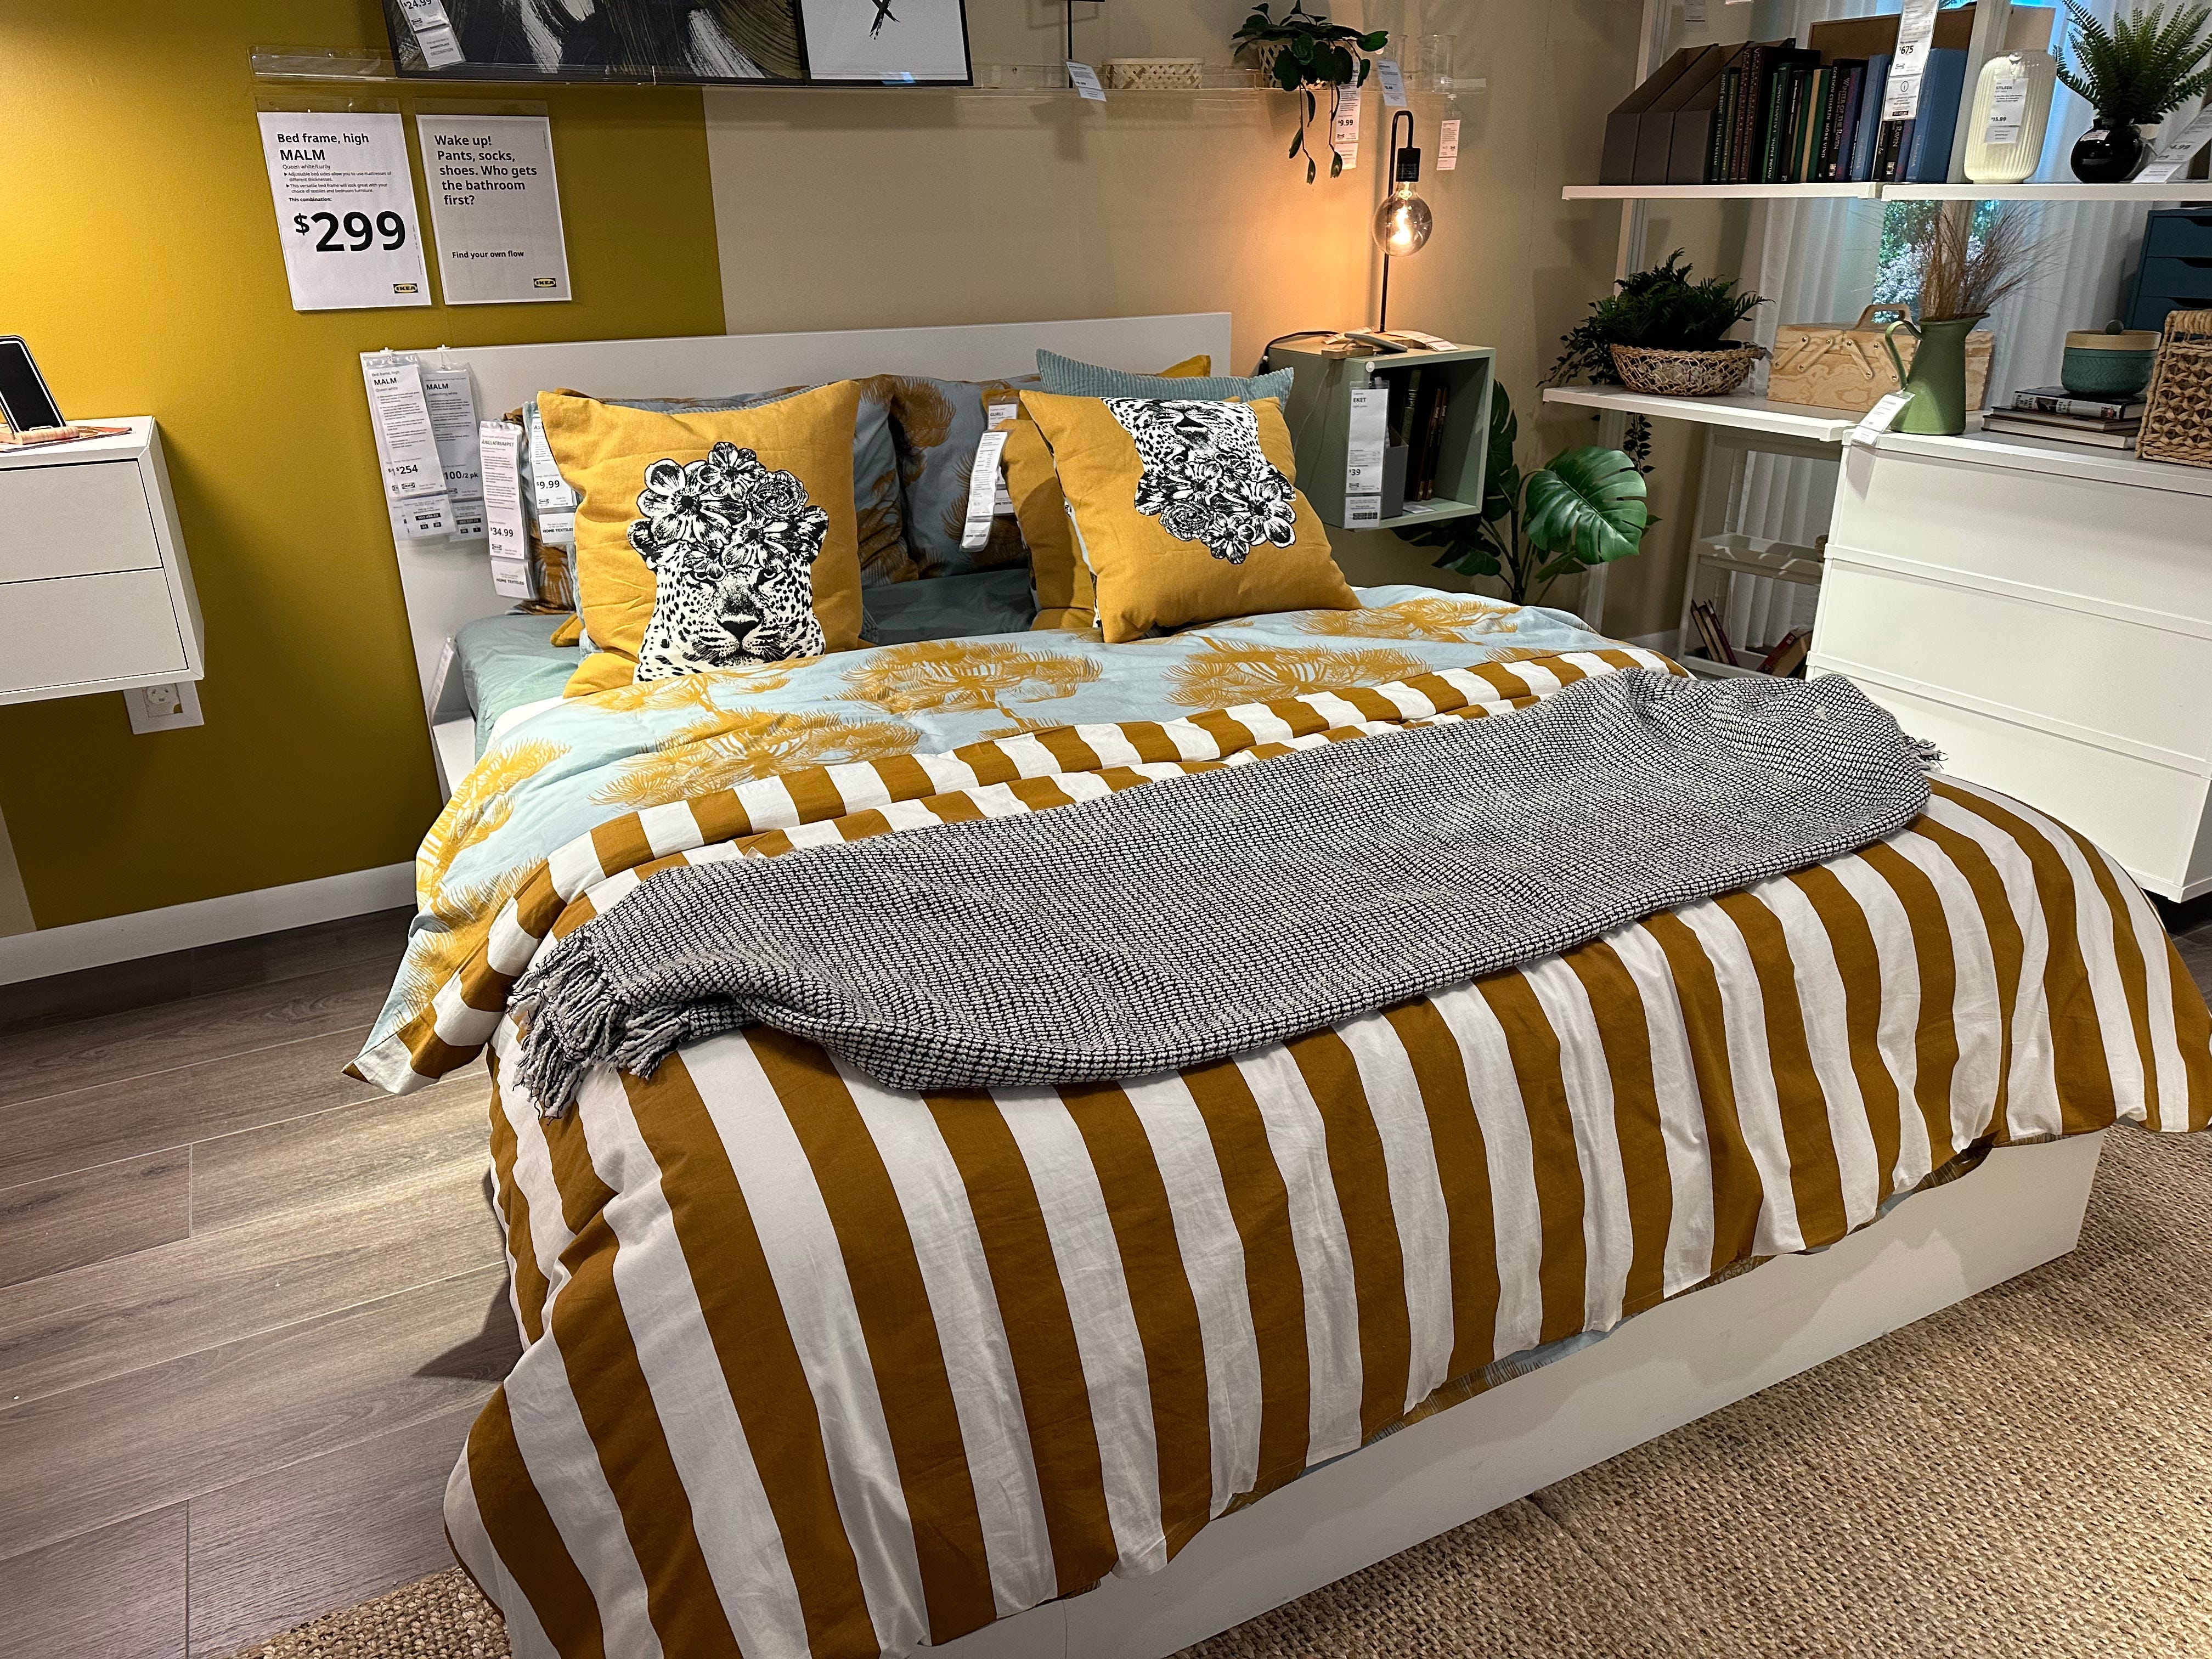 Bett mit gestreifter, gelber und blauer Bettwäsche bei Ikea